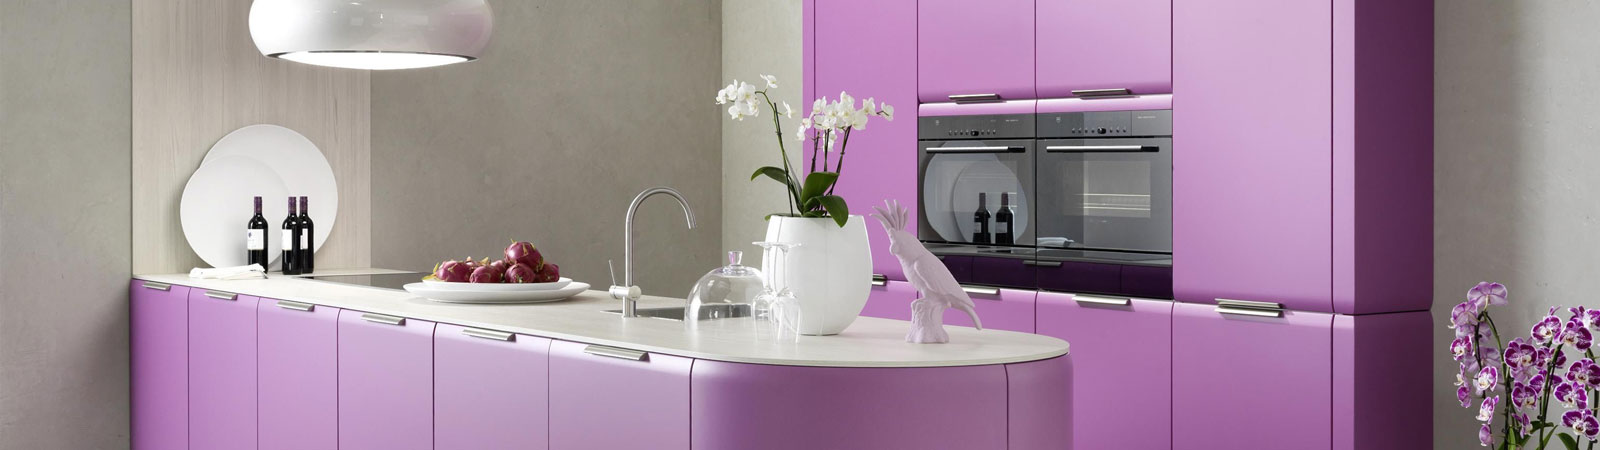 Lila Küche halbrunde Optik modernes Design